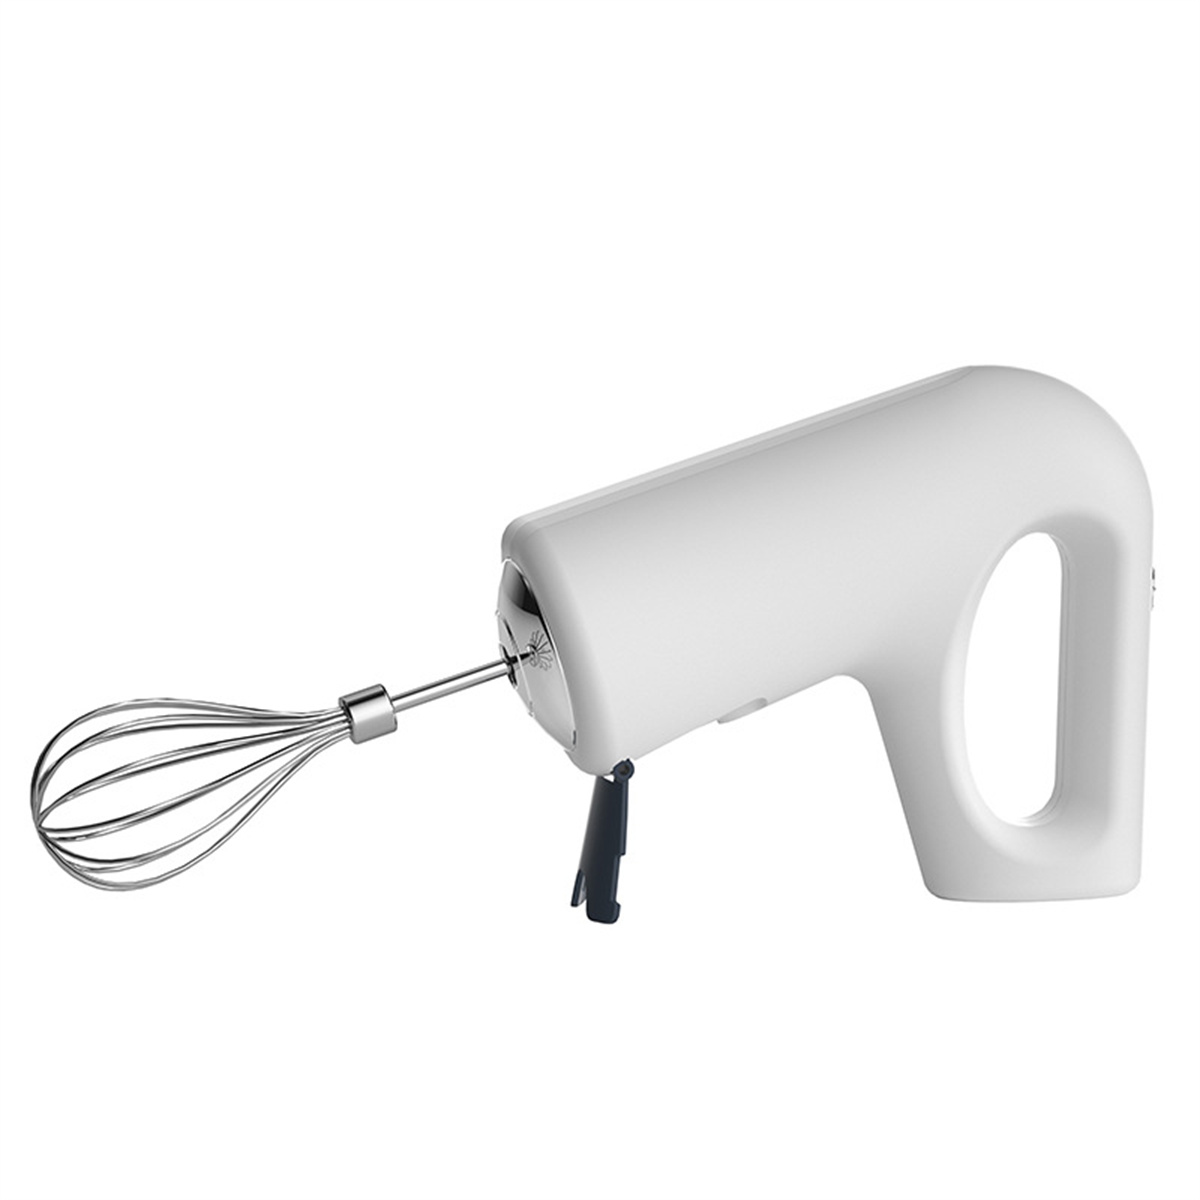 Kabelloser (20 Watt) Weiß Wiederaufladbar Weiß Elektrischer SYNTEK Handmixer Blender Schneebesen Mixer Handgerät